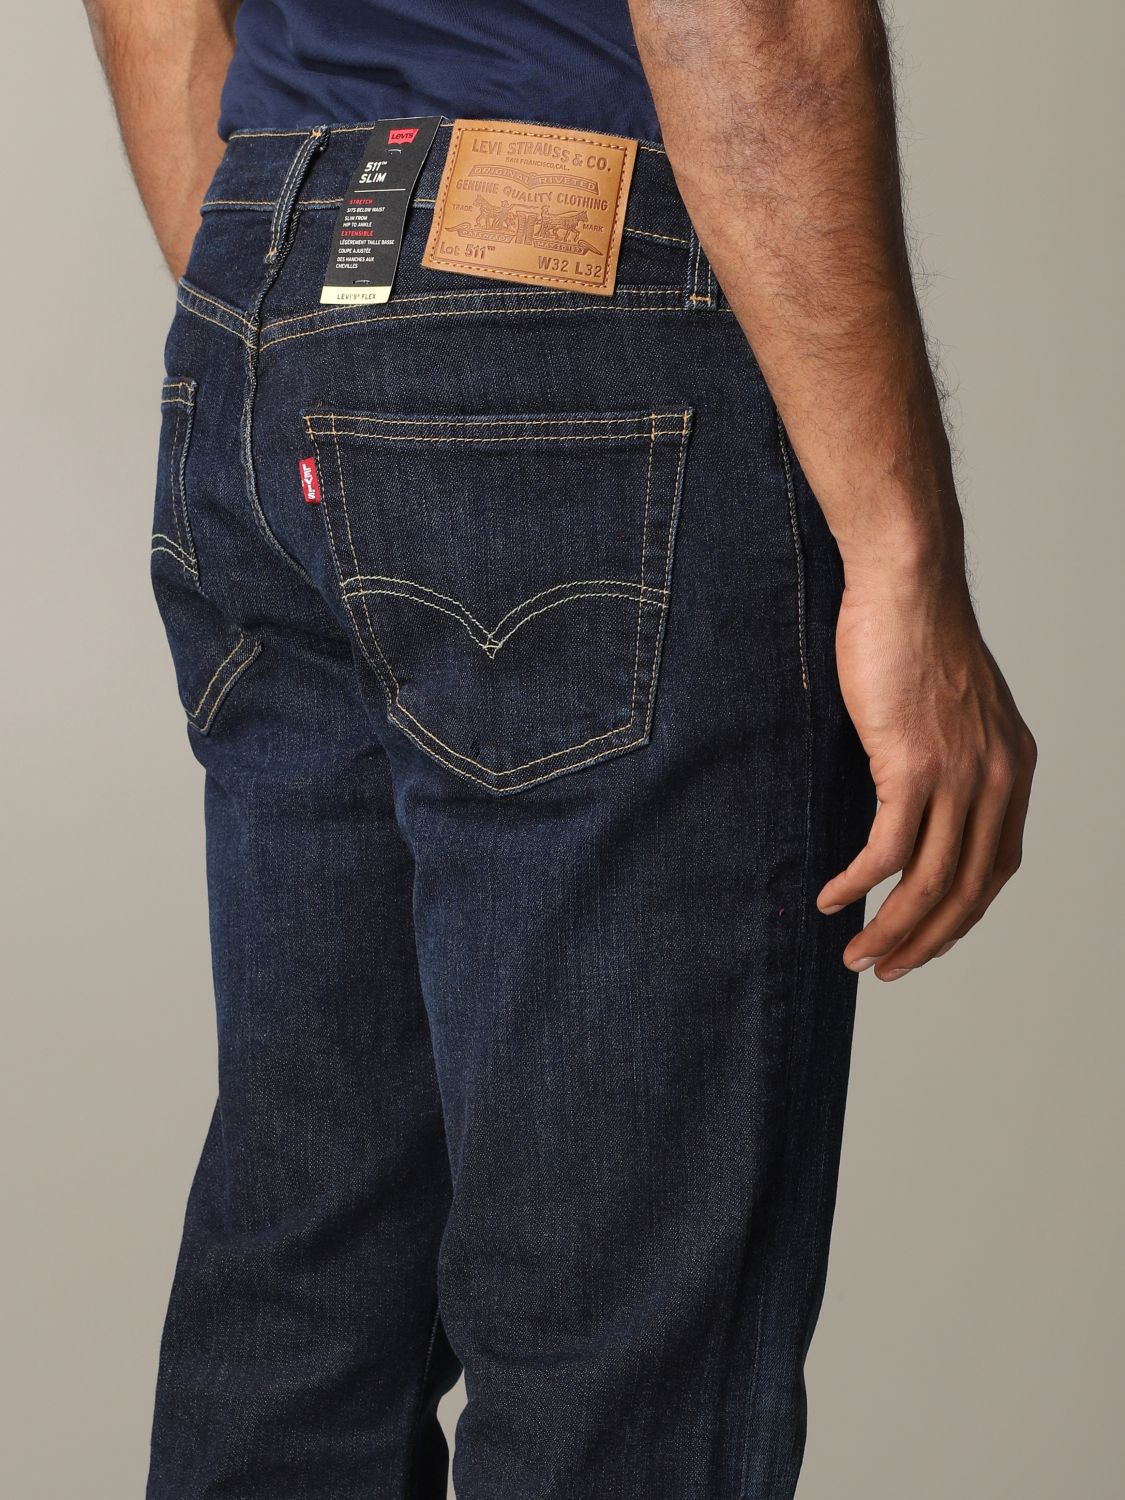 levis jeans mens